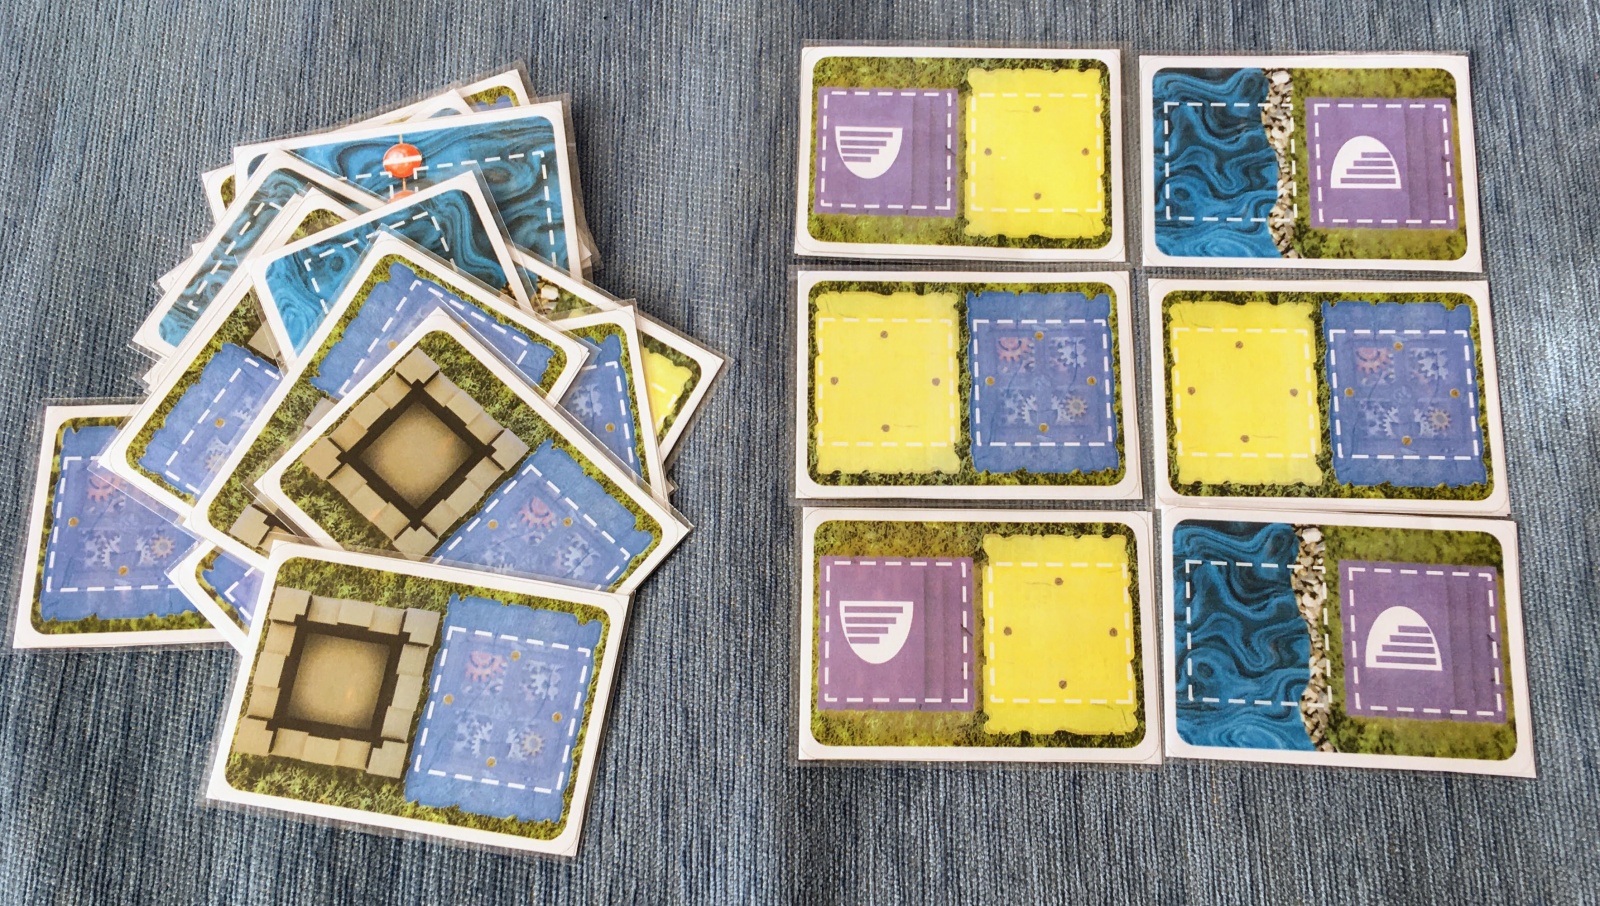 Битва Големов из карт. Как мы превращали игру в Карточную лигу Пароботов - 3